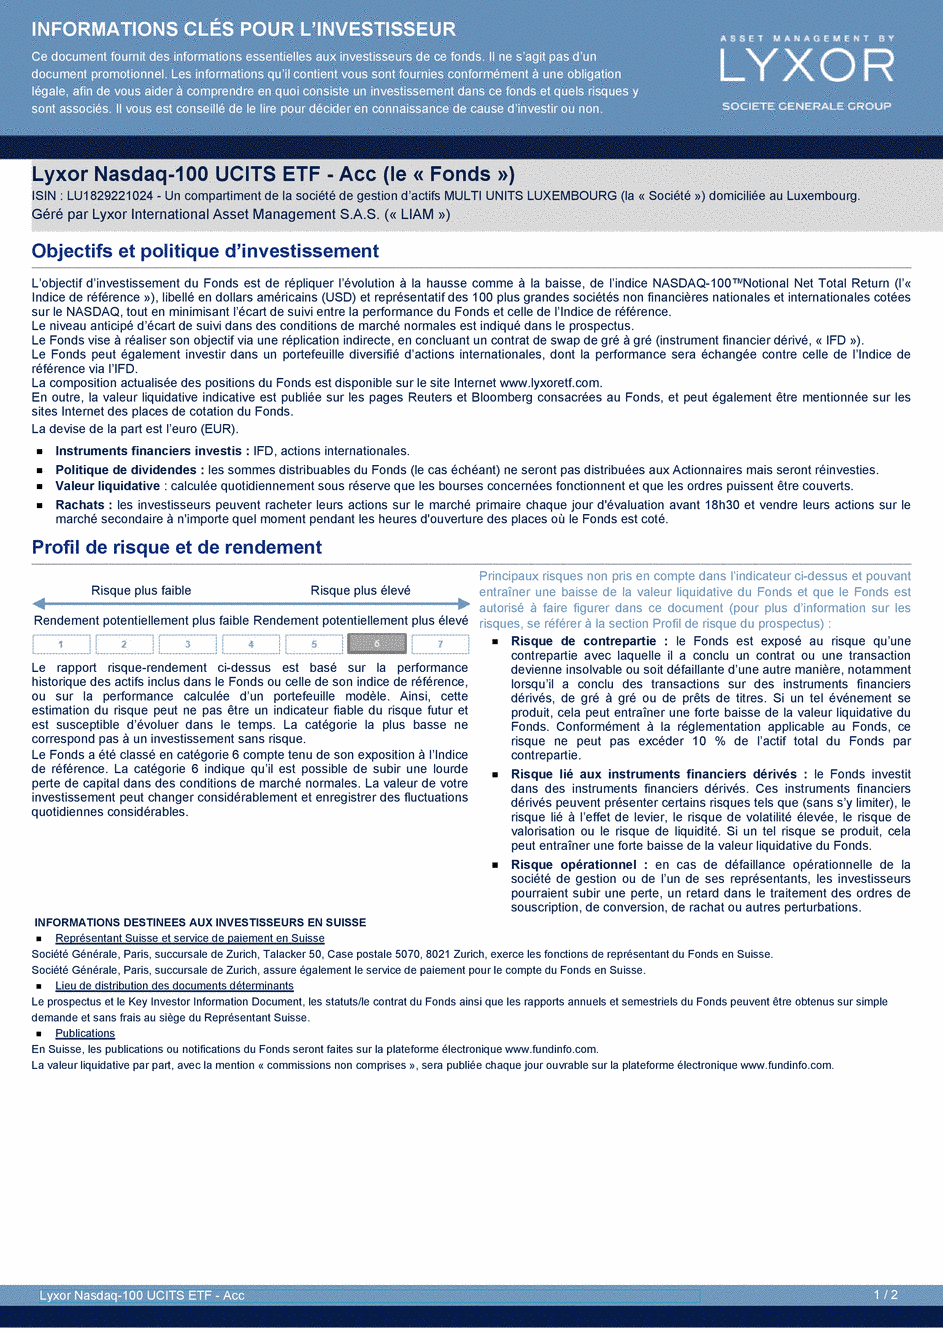 DICI Lyxor Nasdaq-100 UCITS ETF - Acc - 27/11/2019 - Français